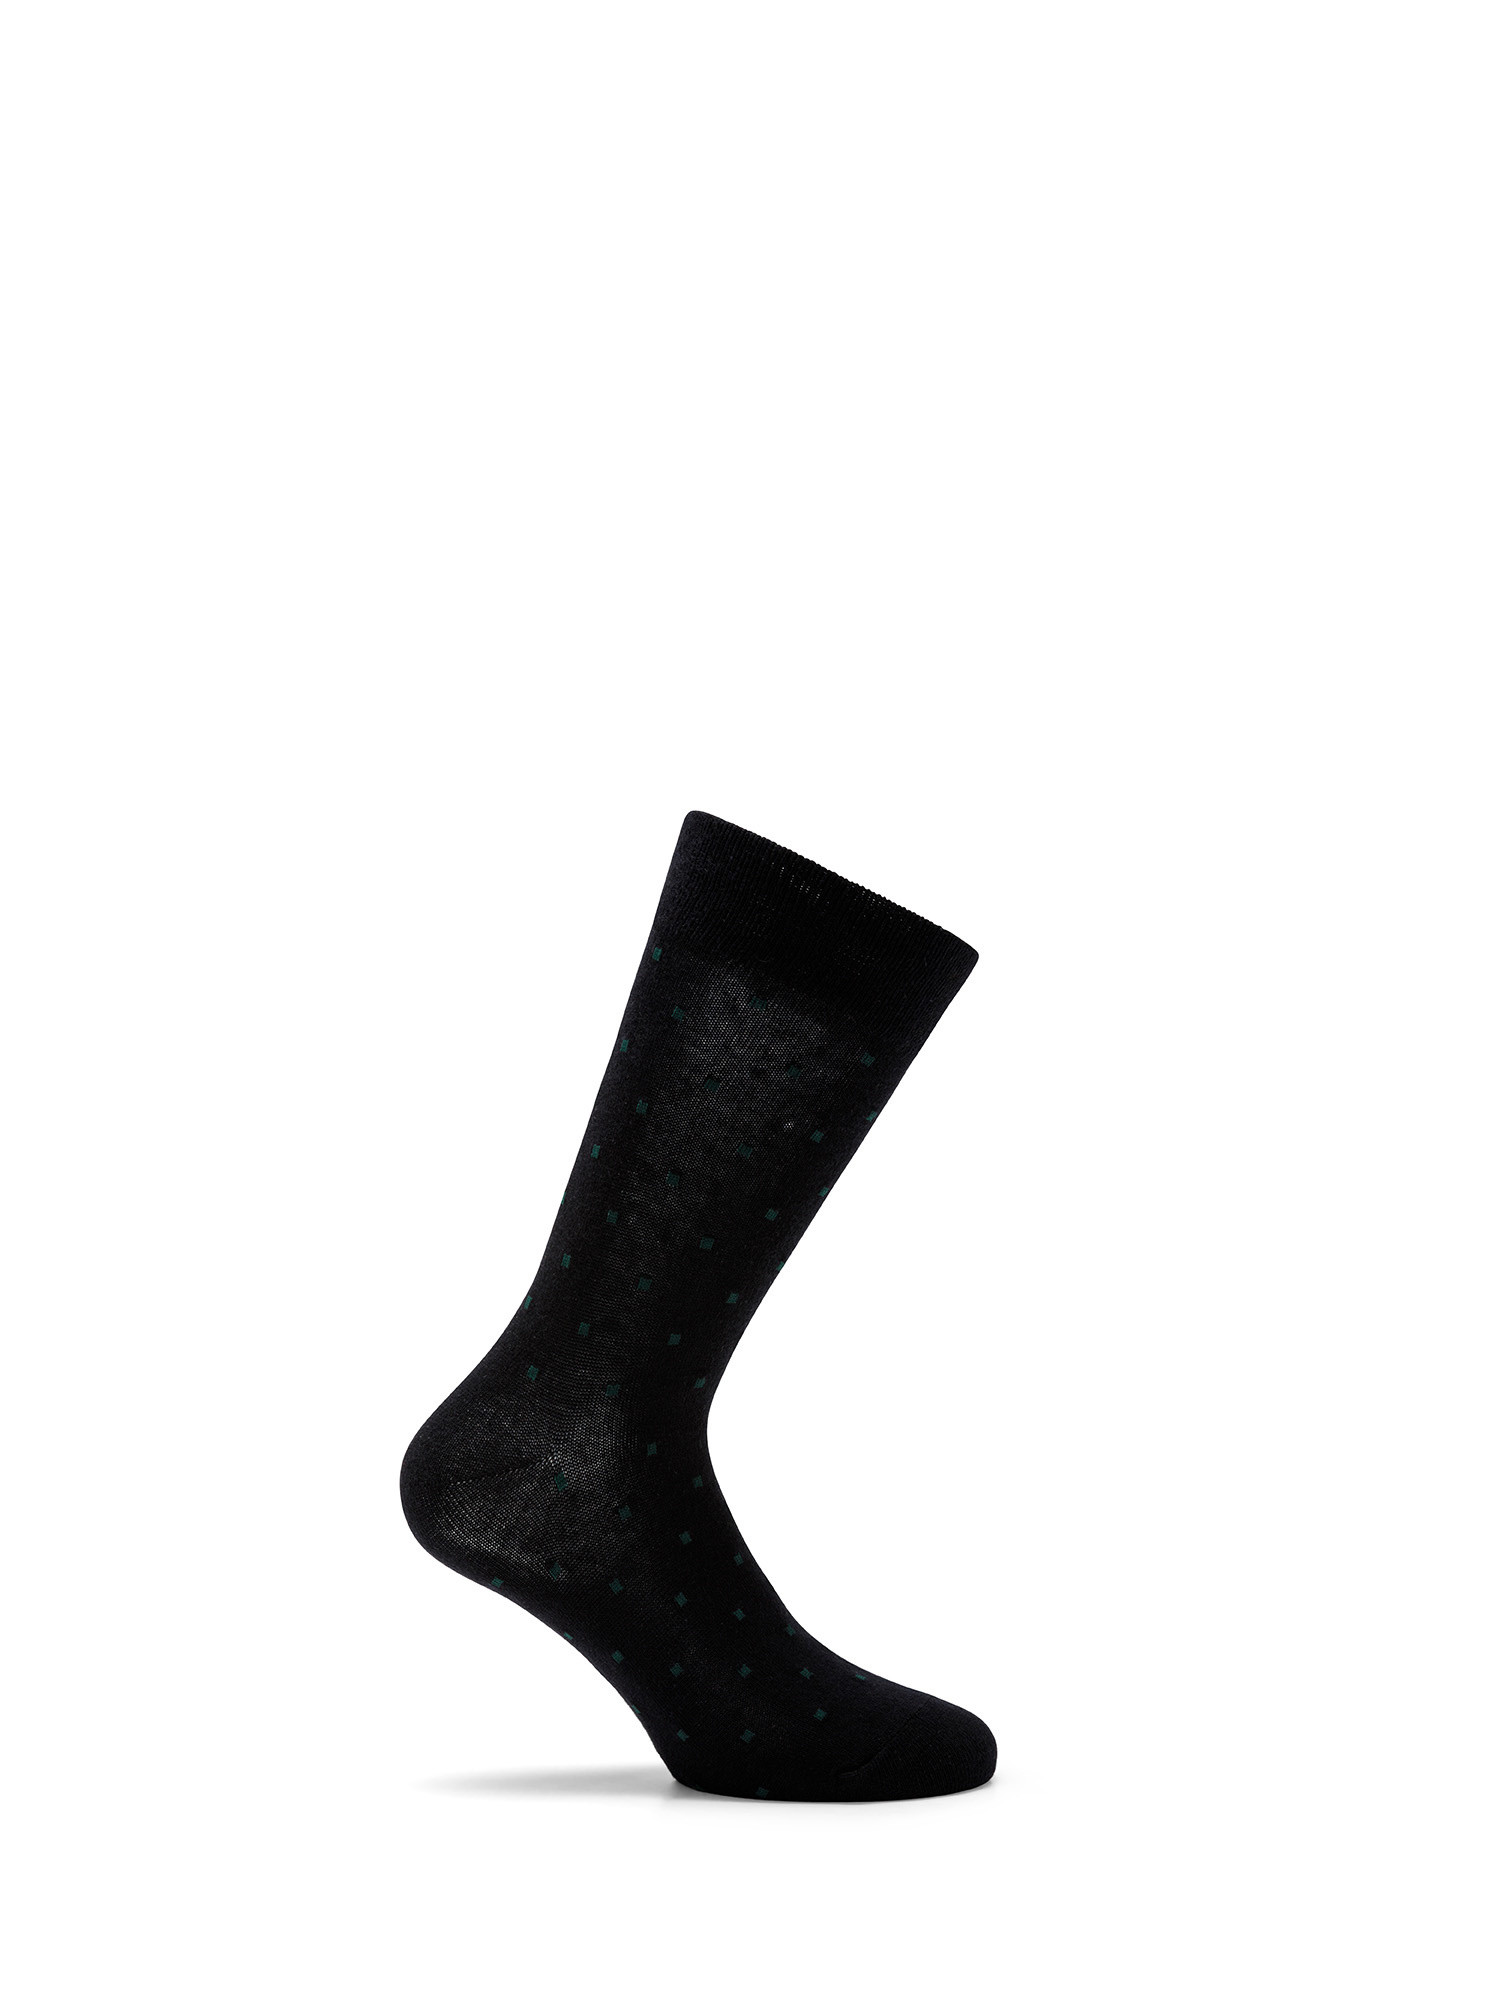 Luca D'Altieri - Set of 3 patterned short socks, Dark Blue, large image number 0